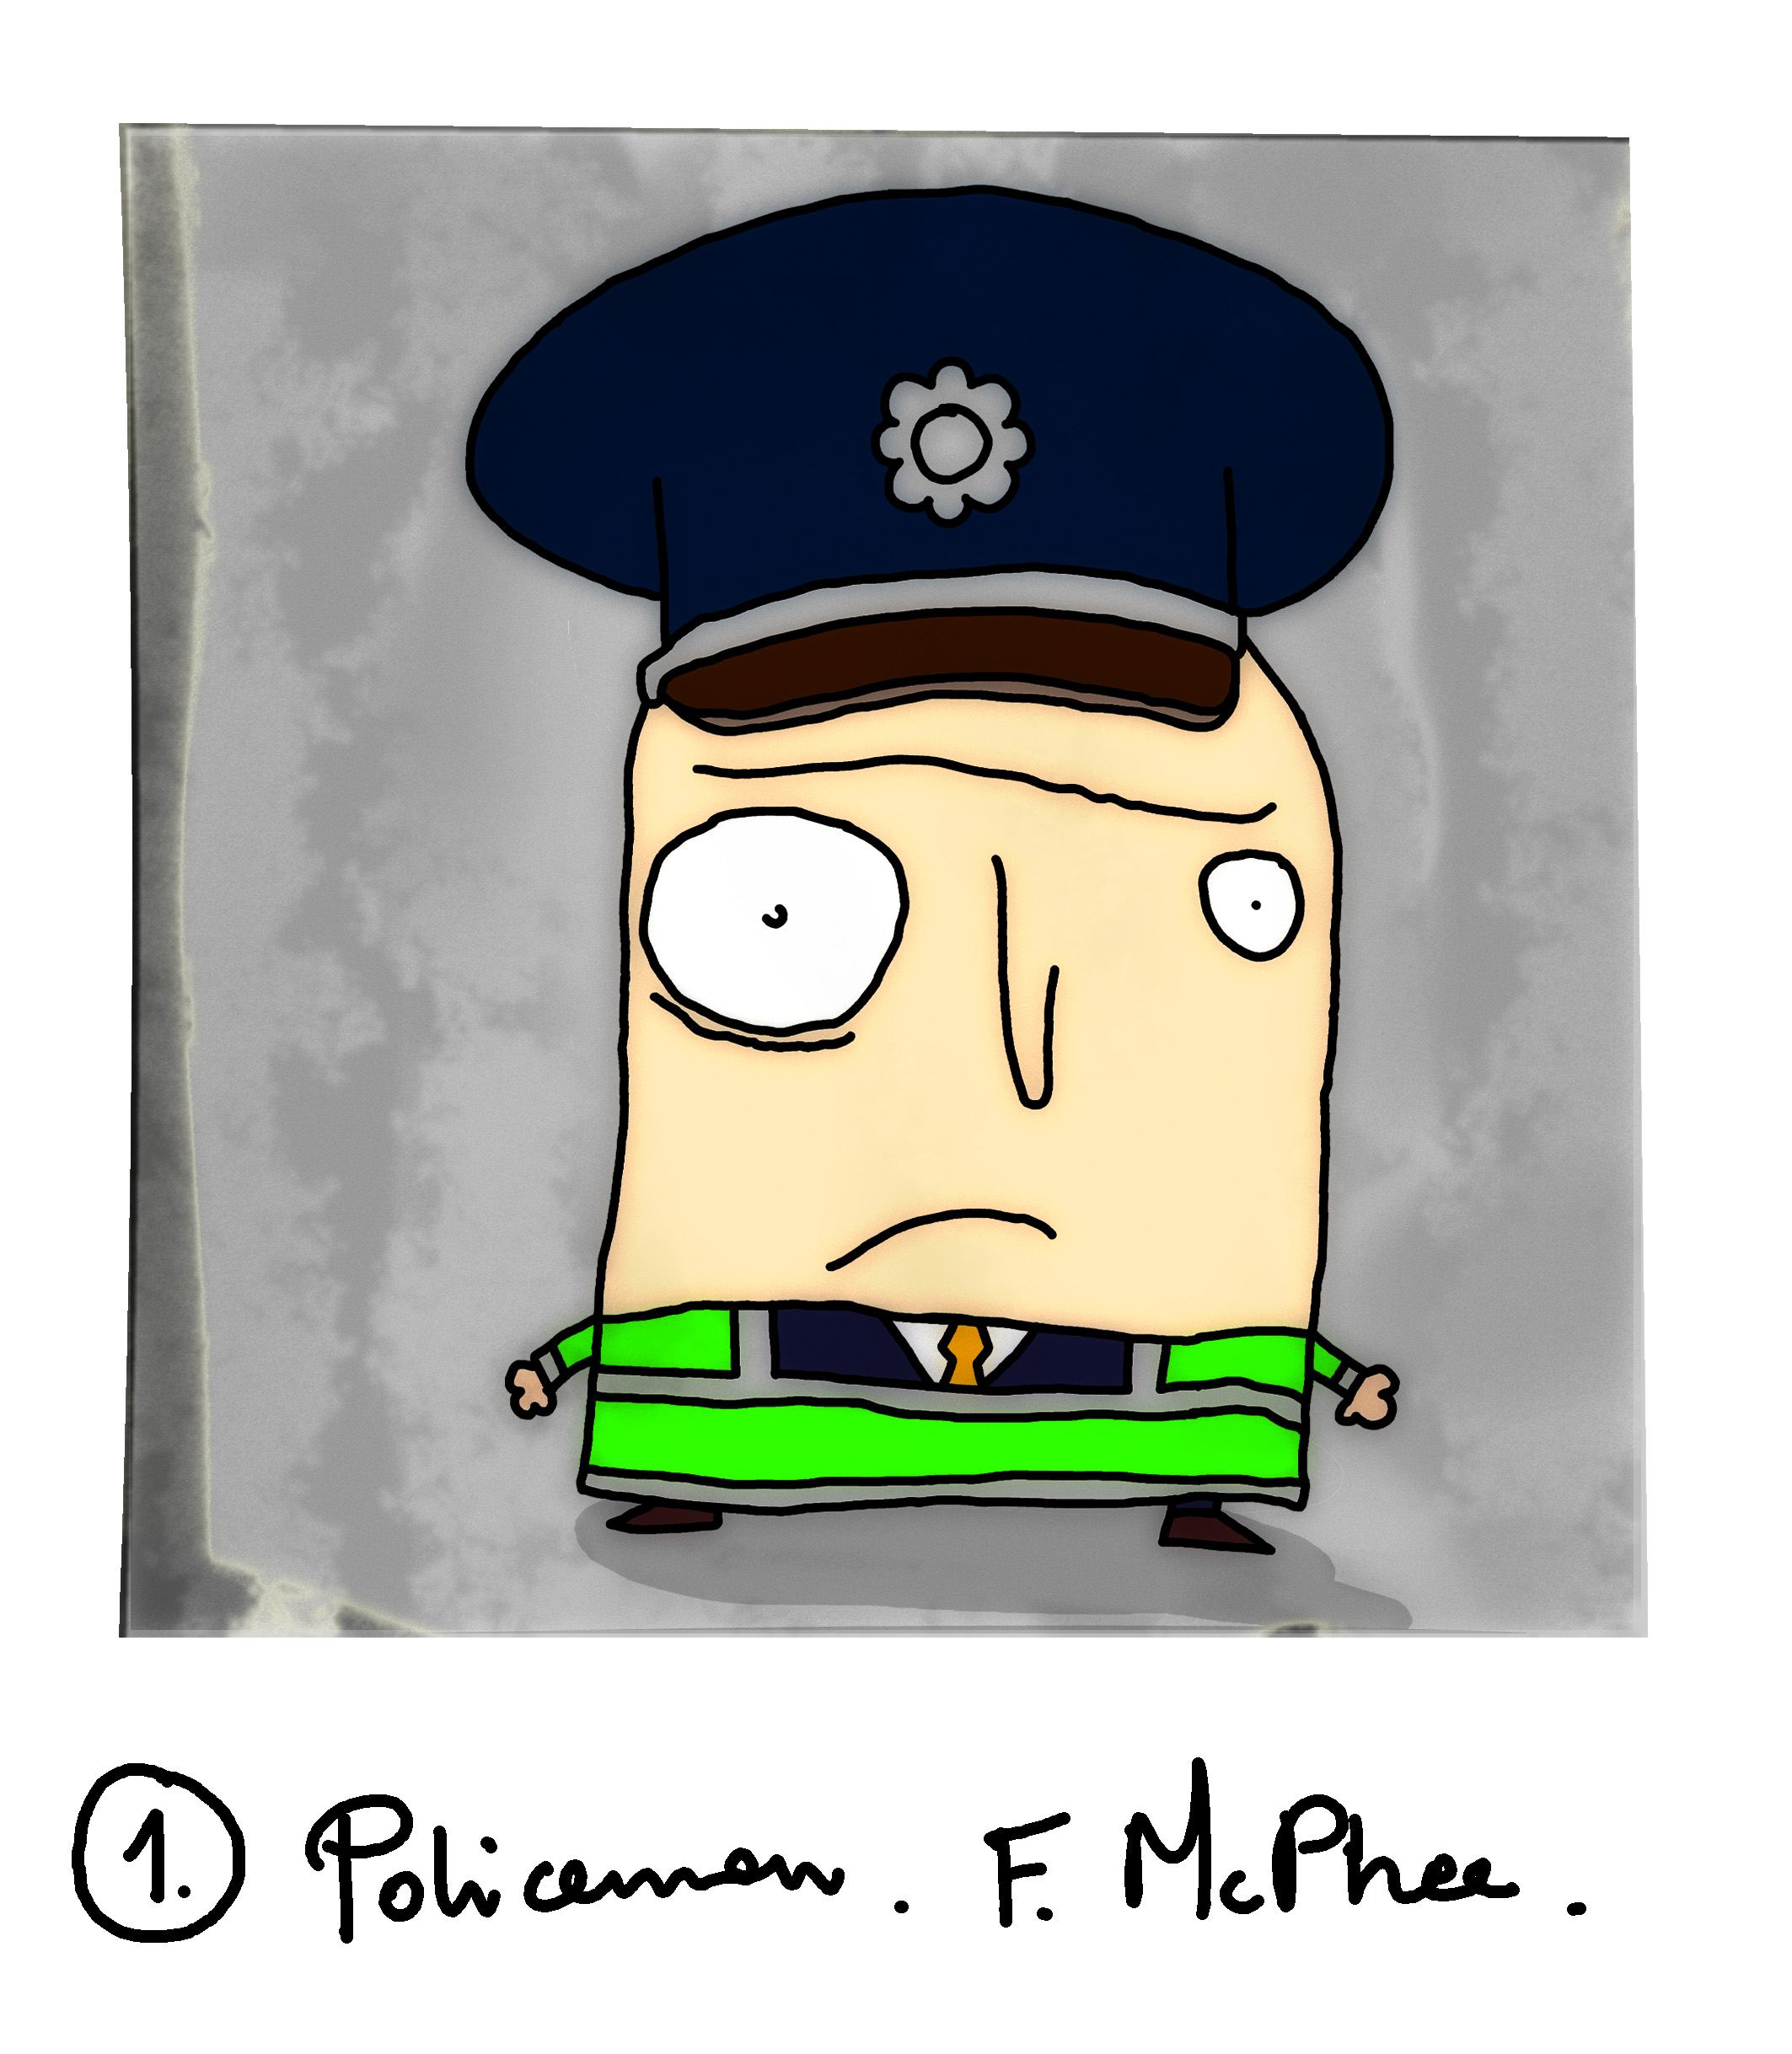 Futu-cocky_001. F. Policeman